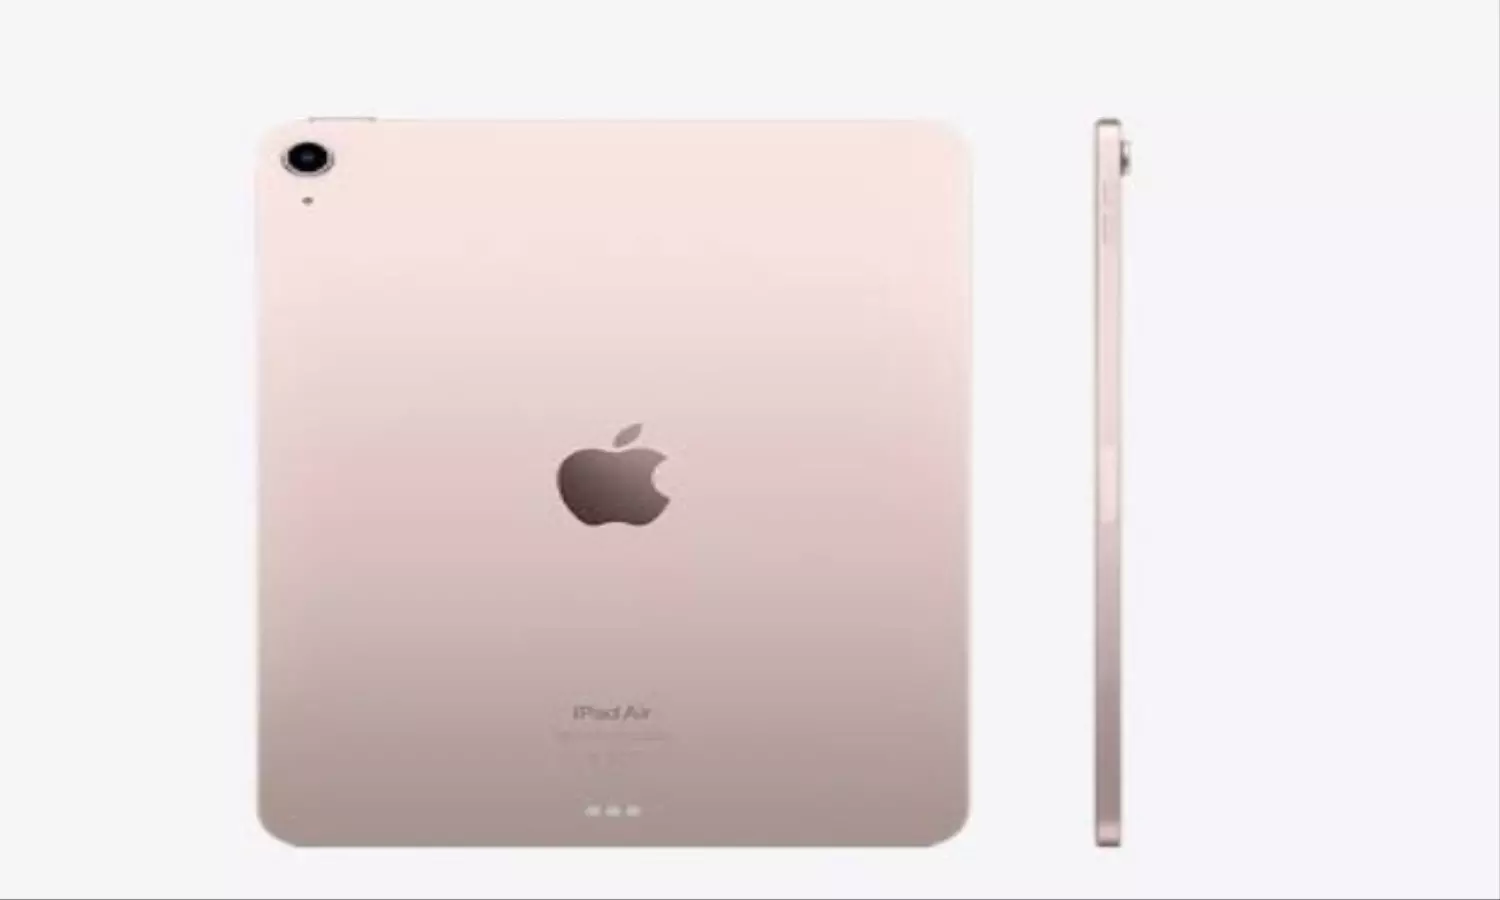 Apple New iPad: एप्पल का आईपैड जल्द होने जा रहा लॉन्च, डिस्प्ले से M3 चिपसेट तक मिलेंगे कई दमदार फीचर्स